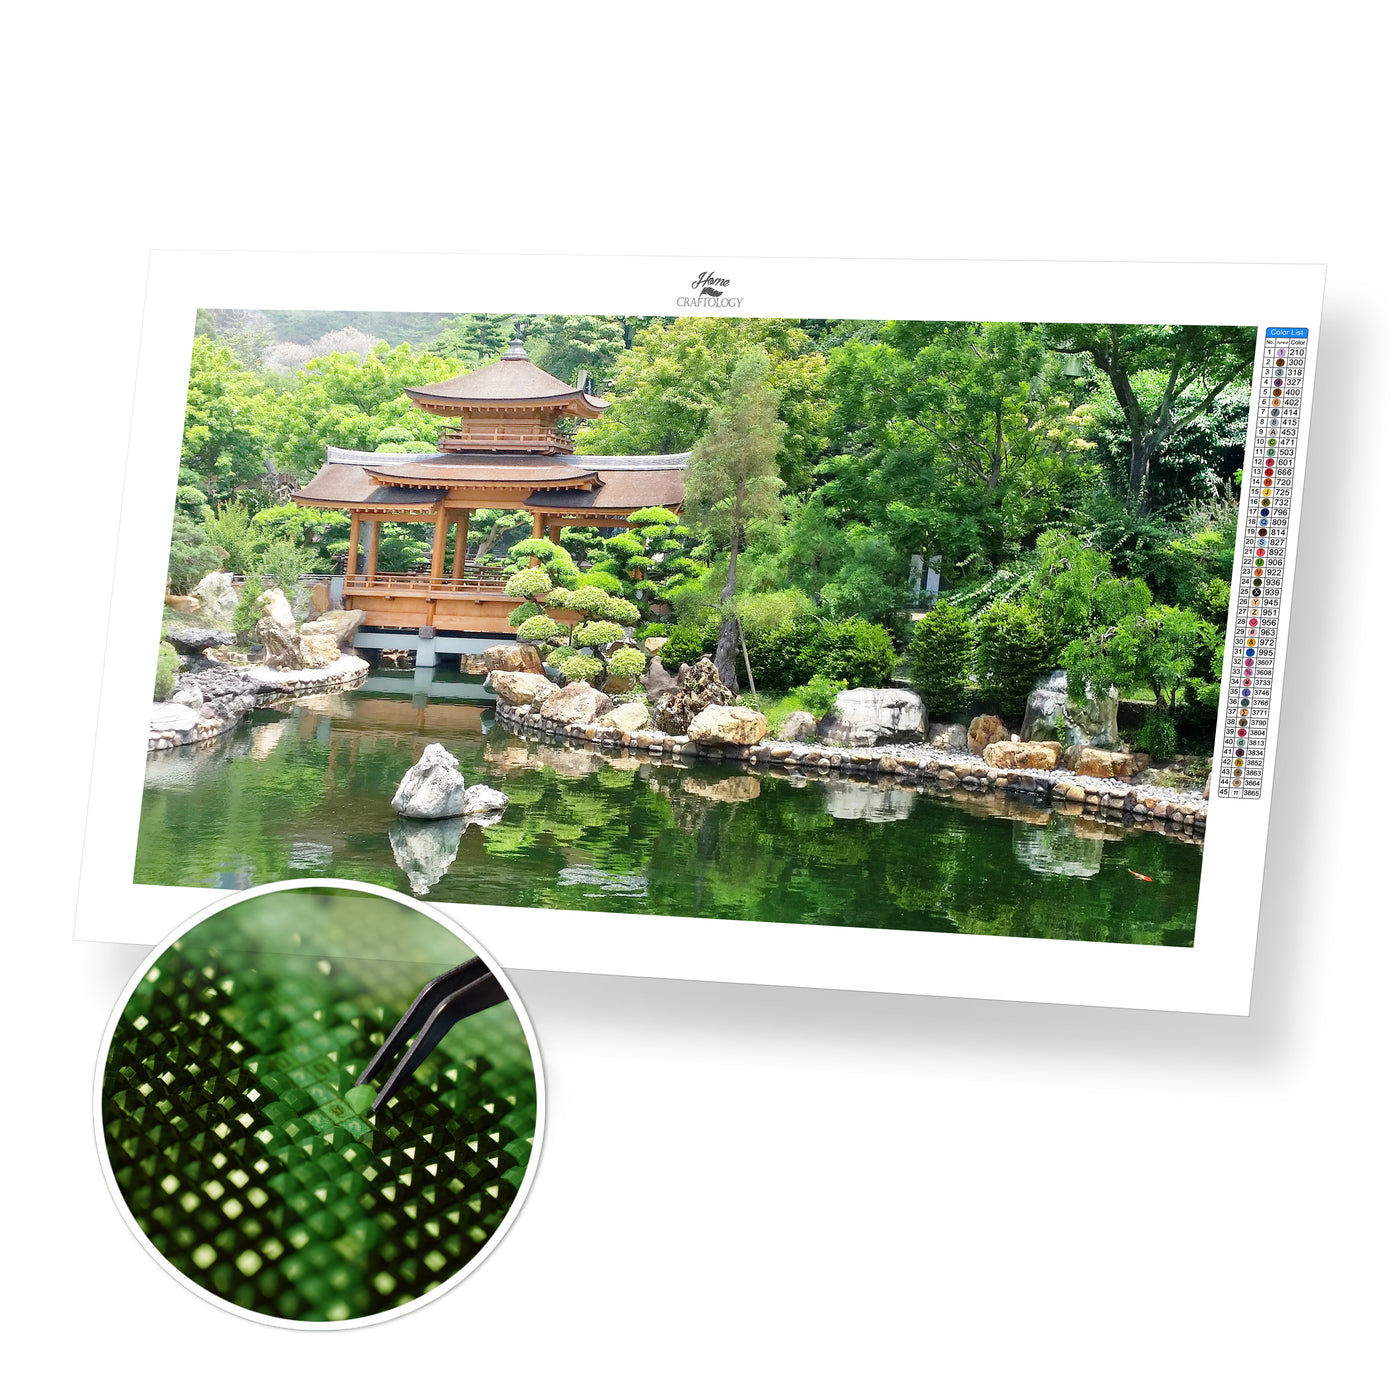 Japanese Garden with Pond - Premium Diamond Painting Kit